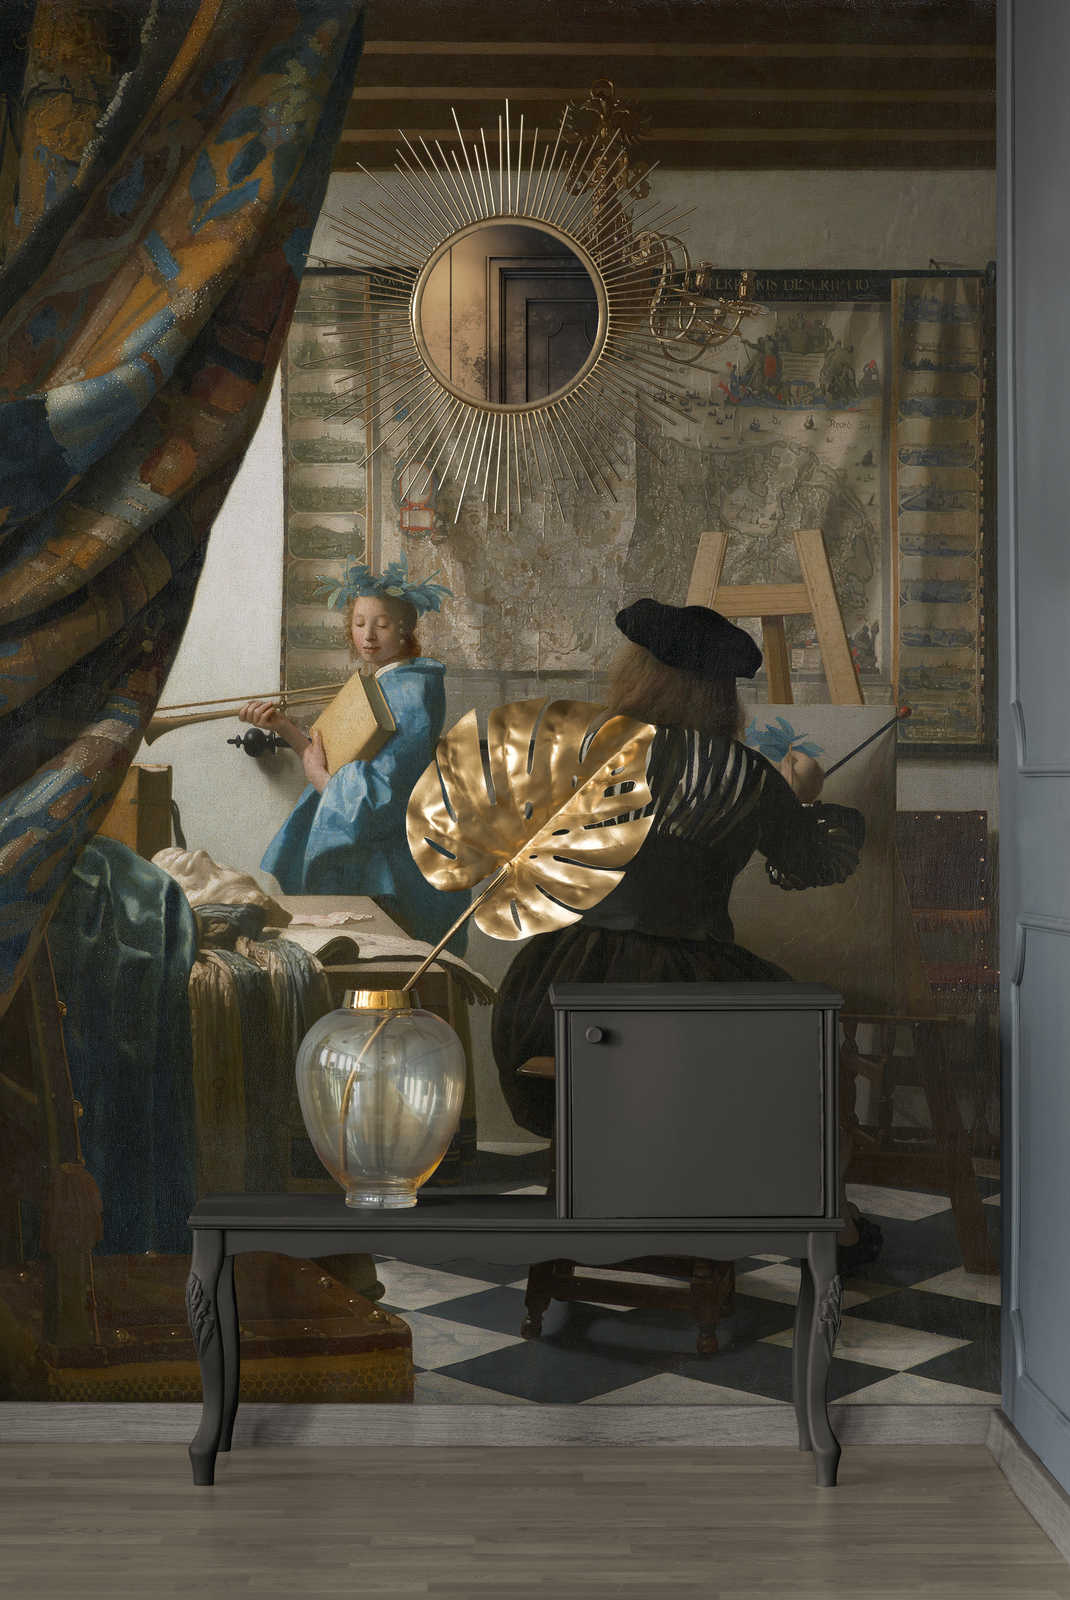             Muurschildering "Vermeer in zijn atelier" van Jan Vermeer
        